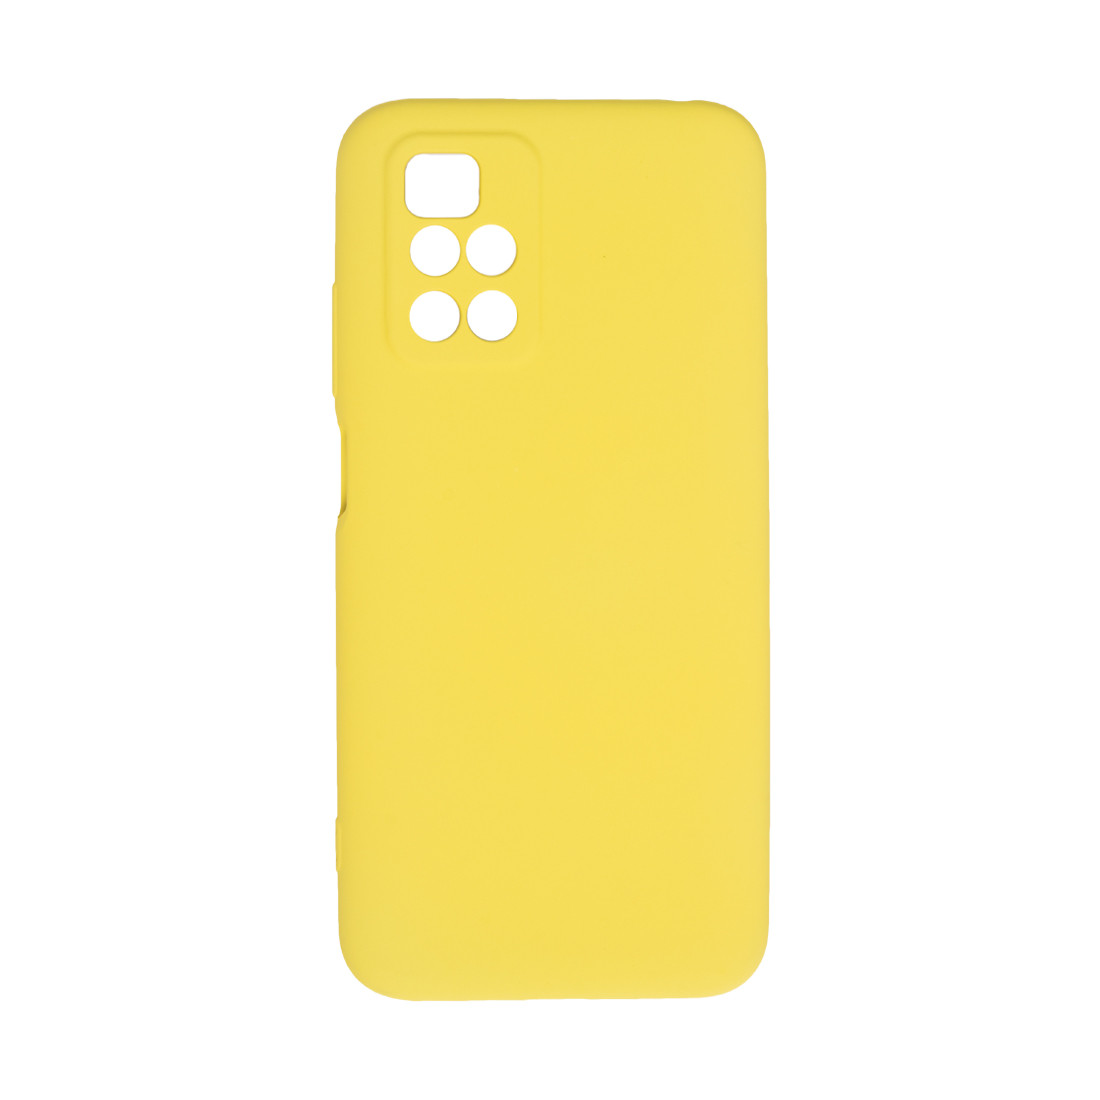 Чехол для телефона  X-Game  XG-HS18  для Redmi 10  Силиконовый  Жёлтый  Пол. пакет